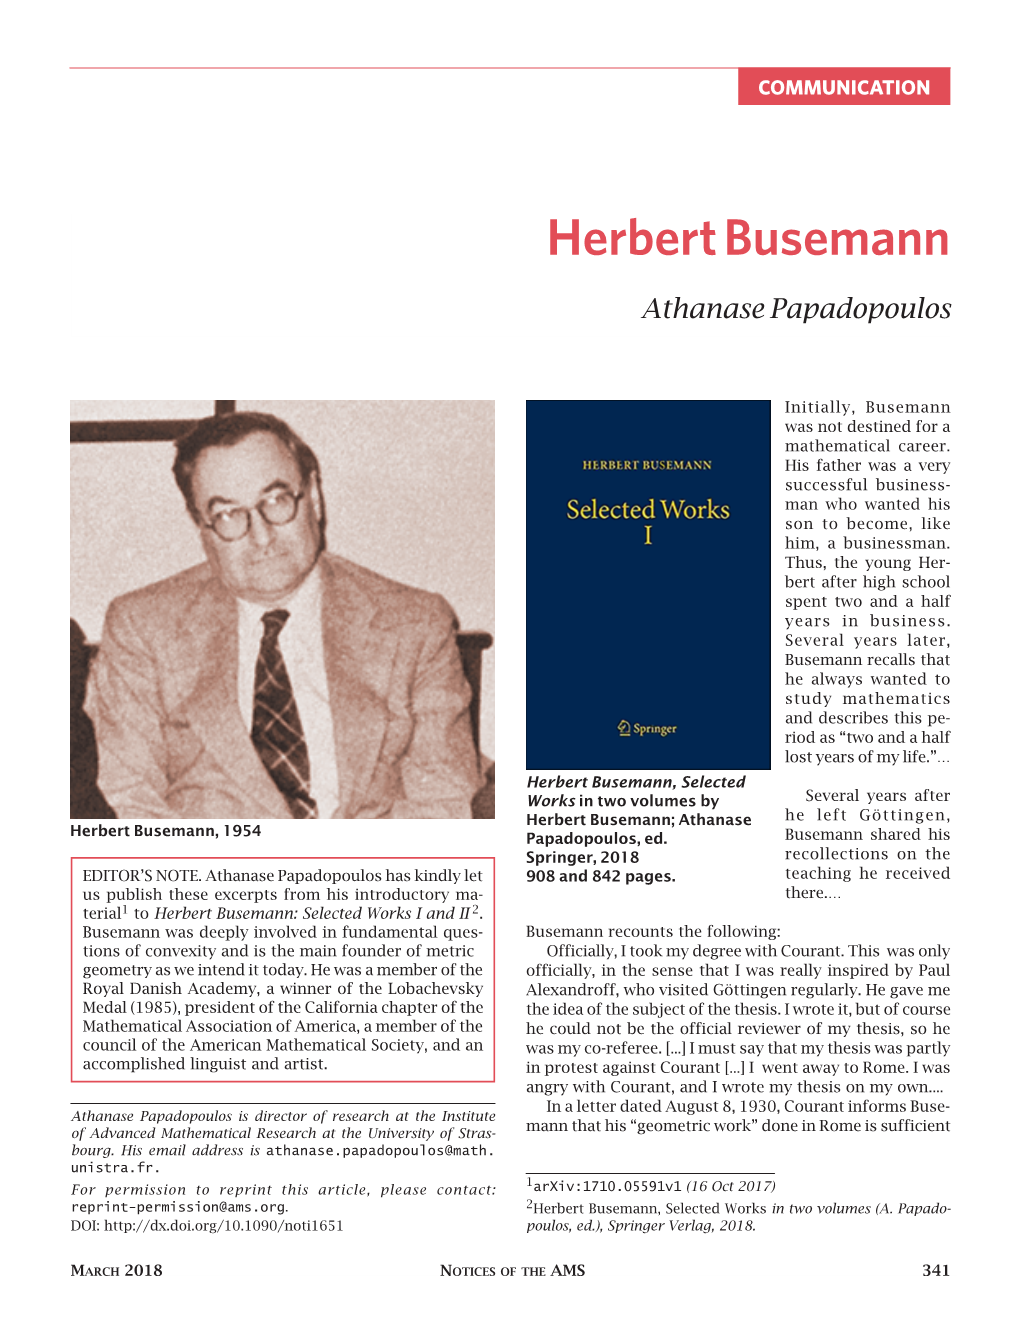 Herbert Busemann